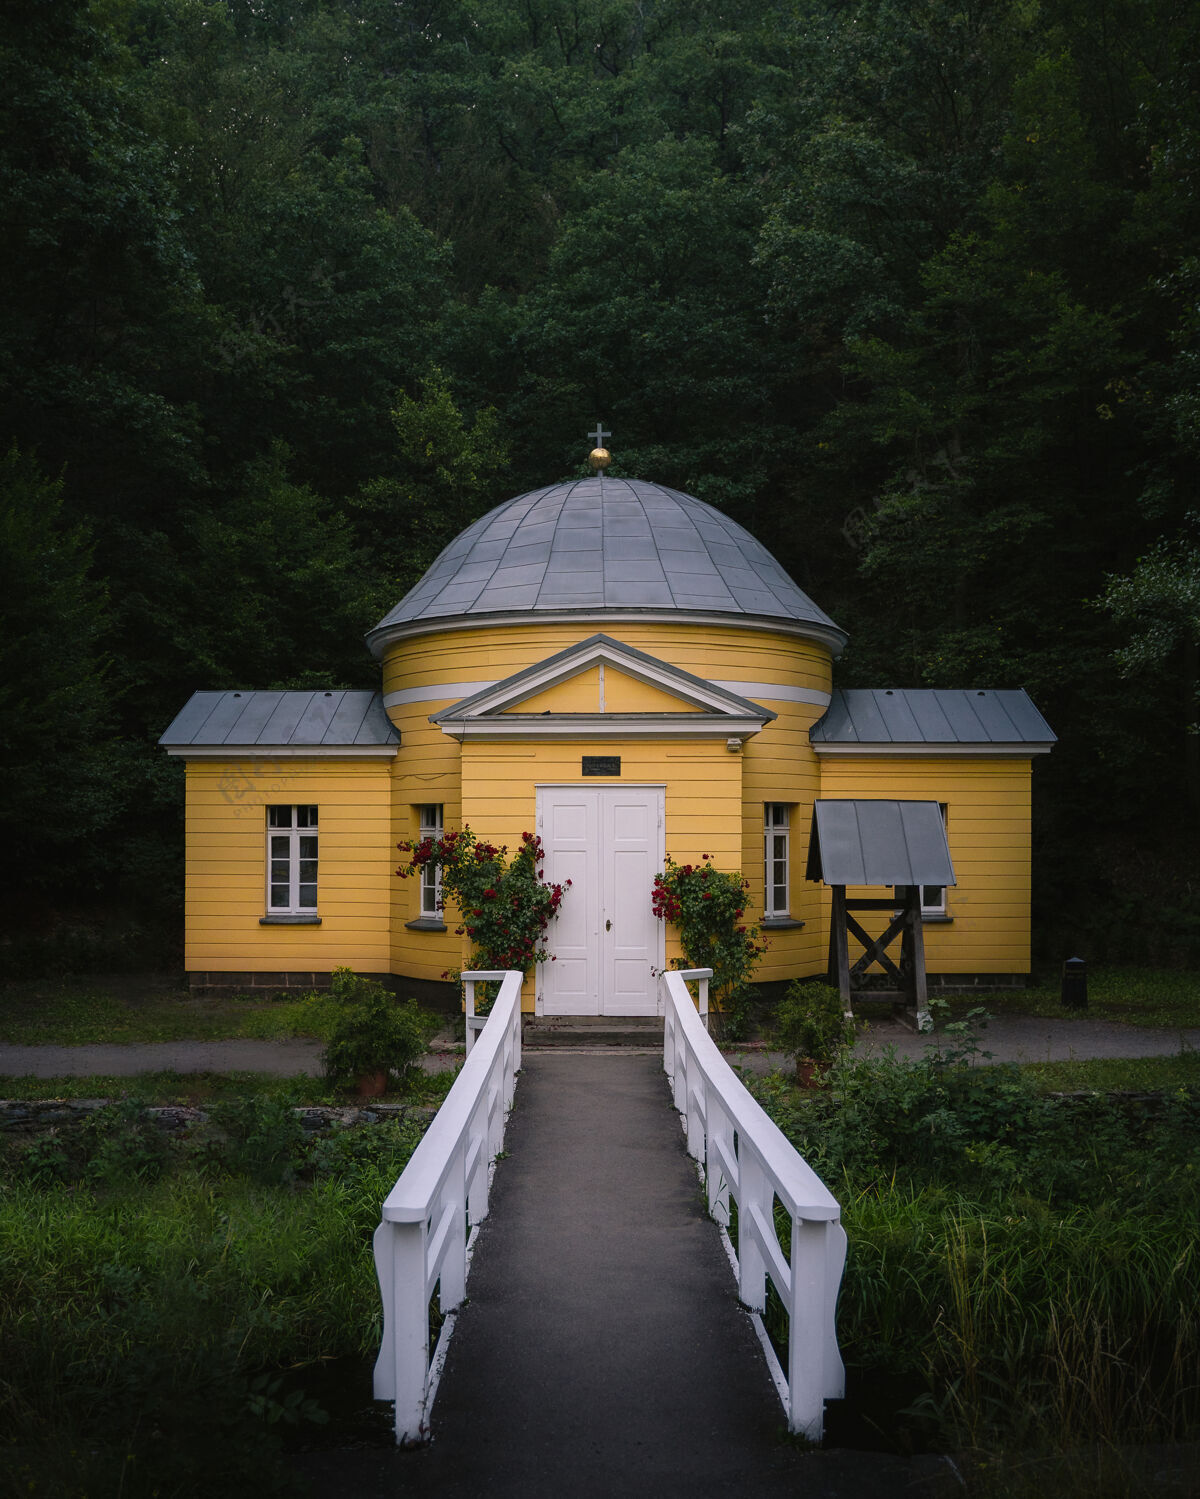 石头一个黄色教设施的垂直正面照片 在森林前面有一条小路和一个花园天主教建筑十字架